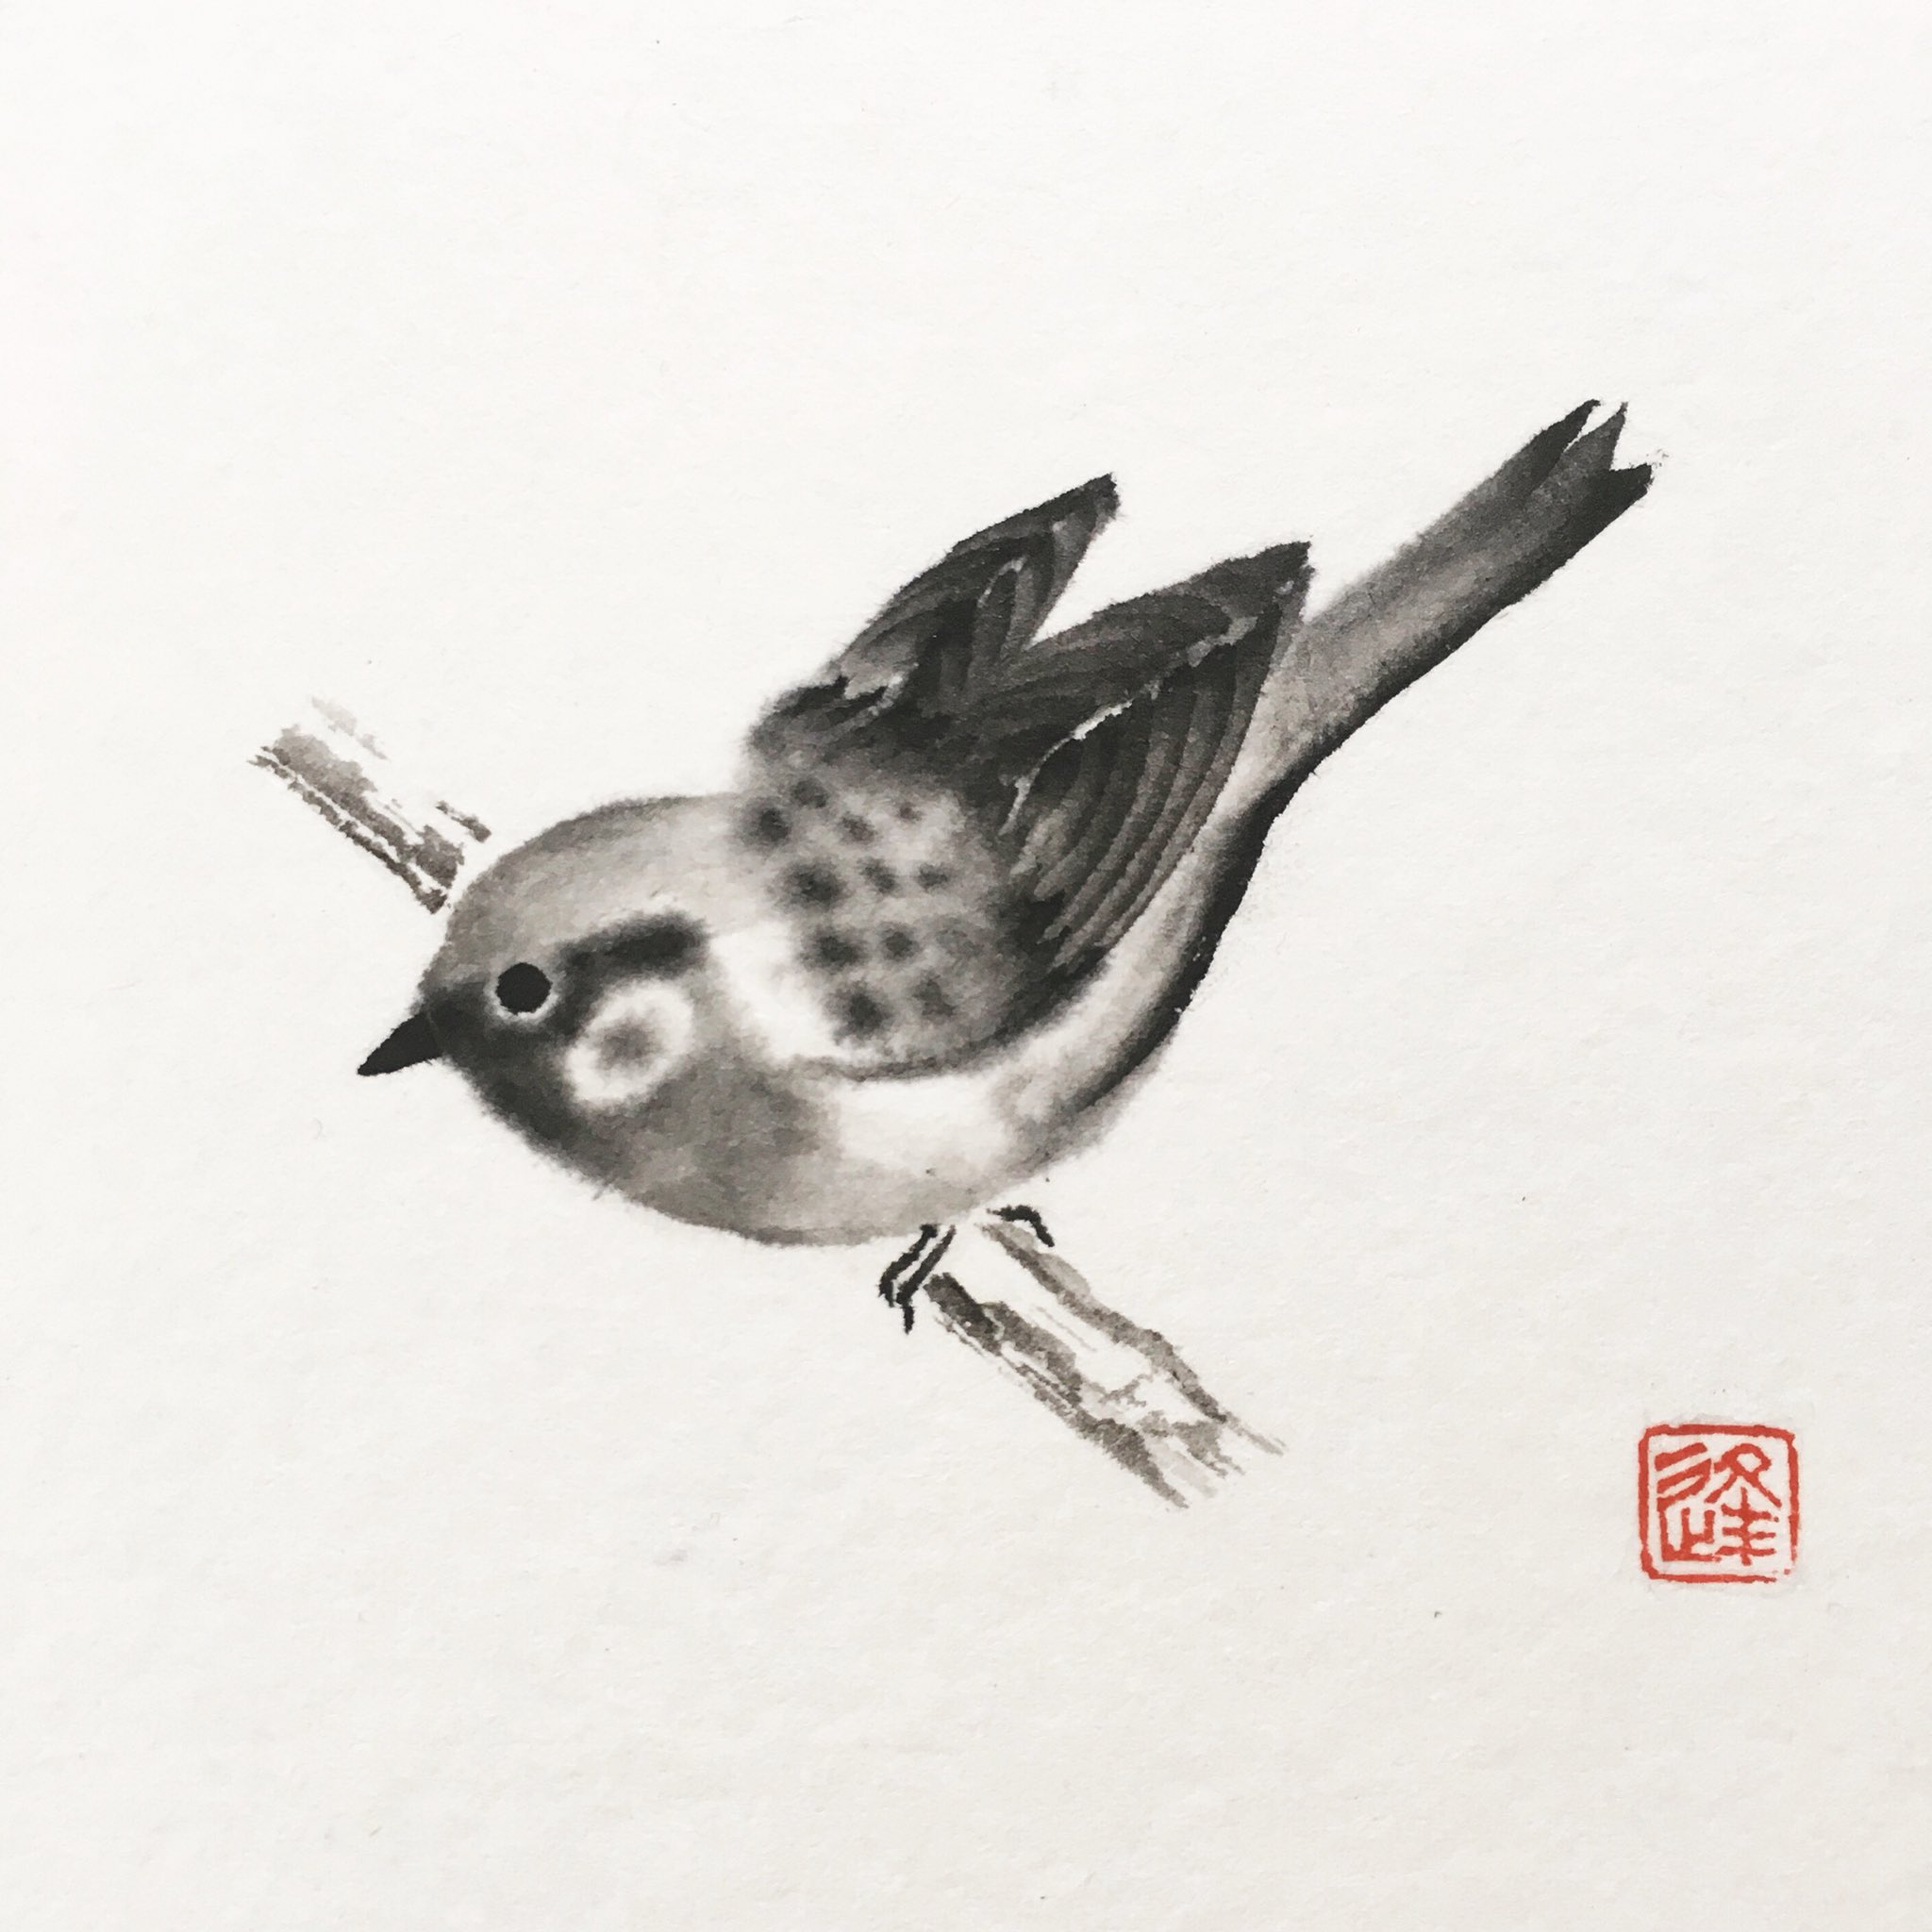 逢香 Ouka 水墨画のスズメを描いてみました 自分がかわいいと思うスズメを描くと 我ながらやっぱりかわいい 鳥を見ると元気になります T Co Irvxijfw4b Twitter